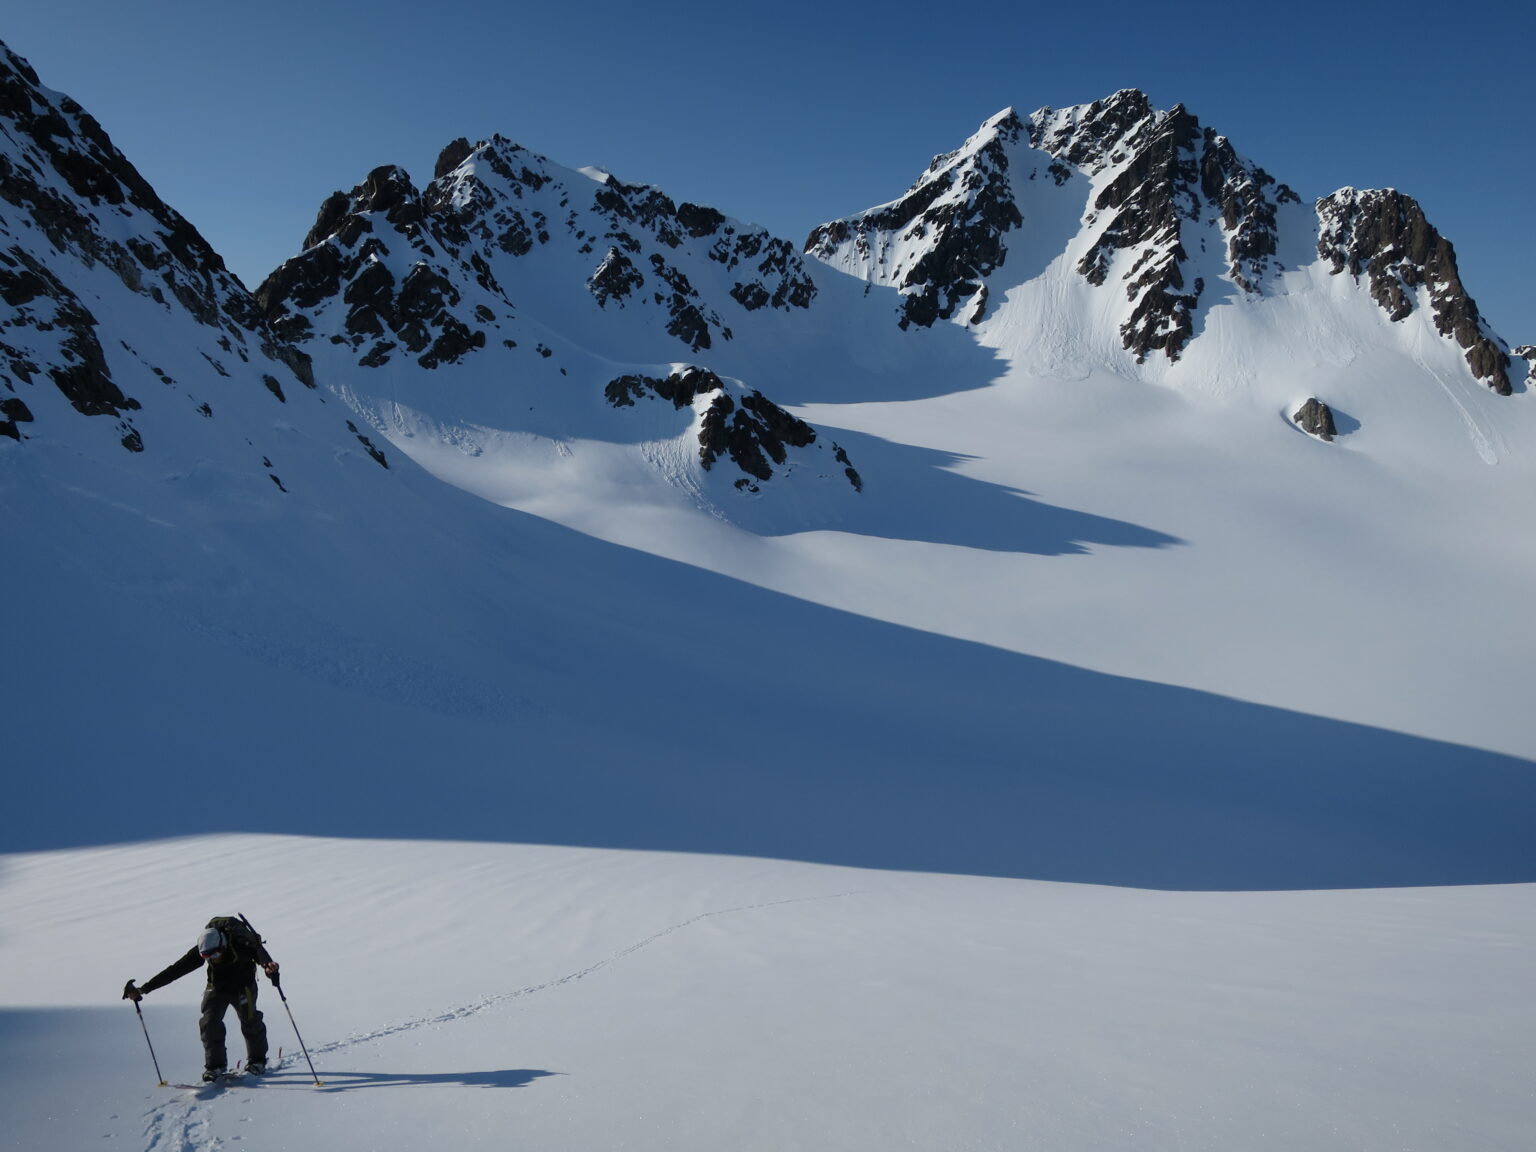 Ski touring up Tvillingtinden in the Lyngen Alps of Norway